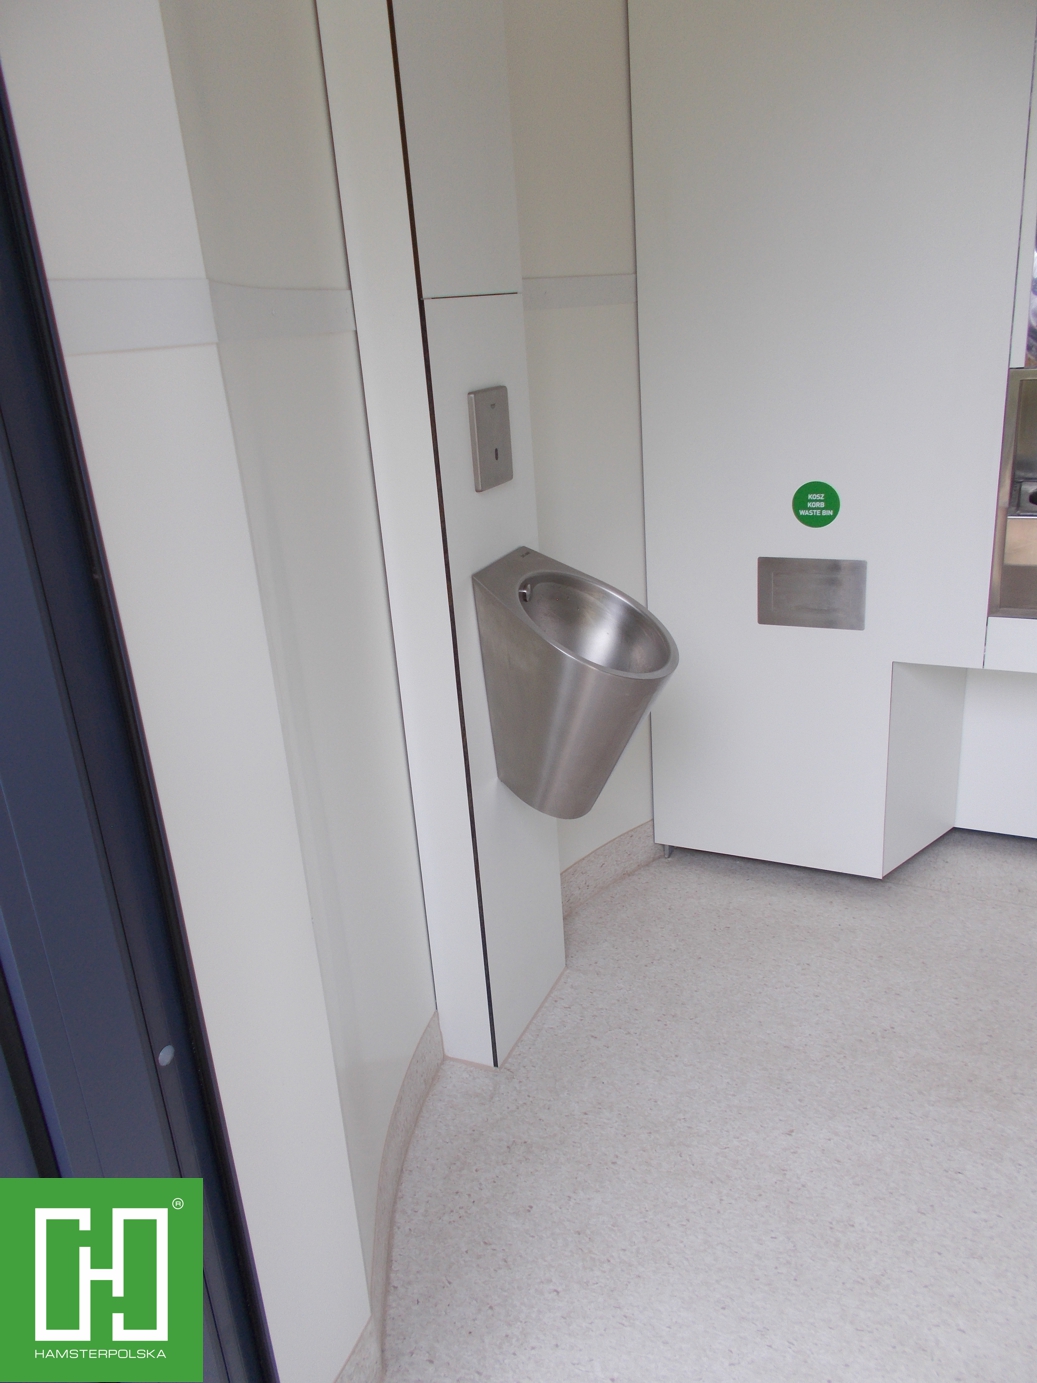 Automatyczna toaleta publiczna Pegasus UNO Struktura w Nowym Tomyślu